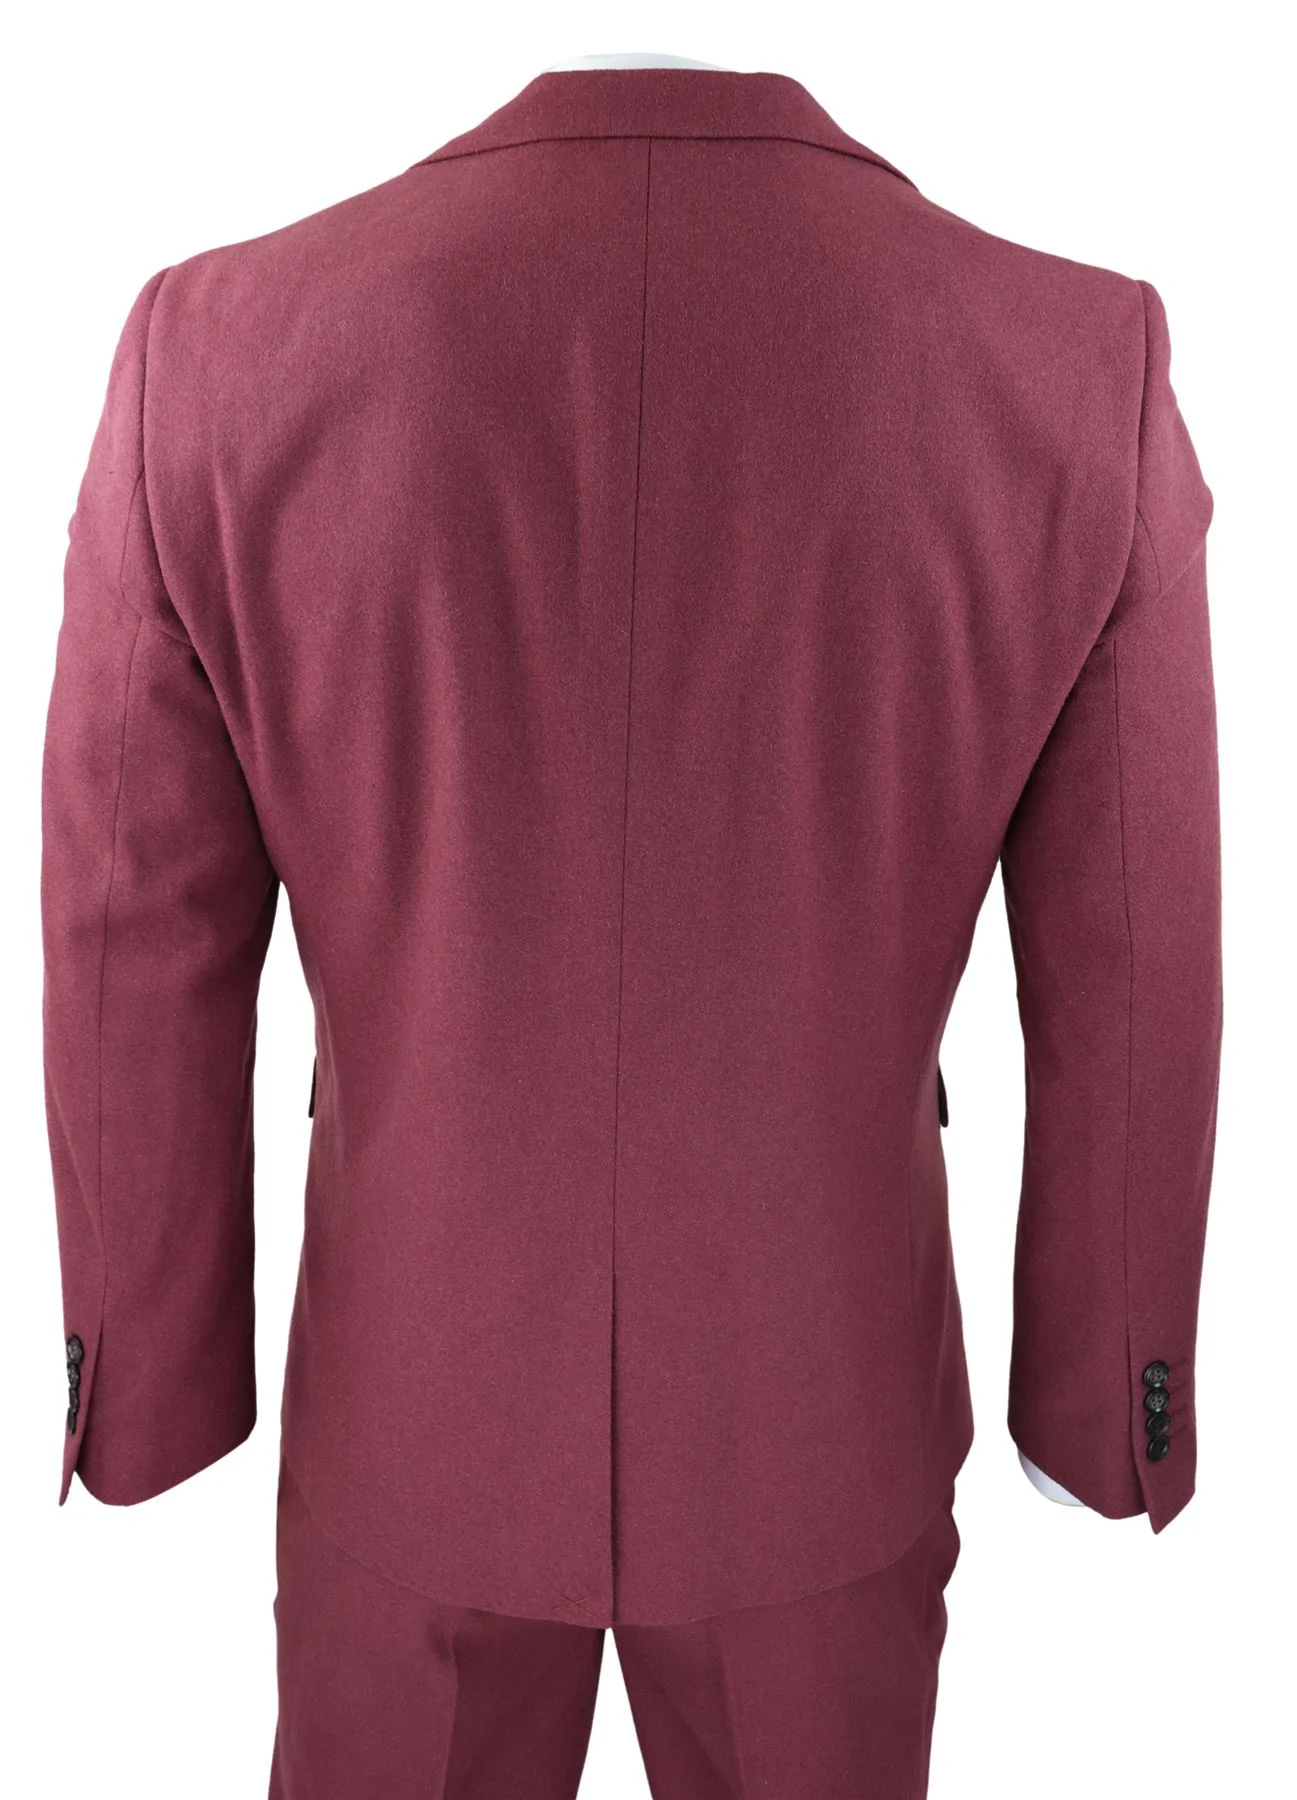 Amazon.com: Men's Burgundy Suits